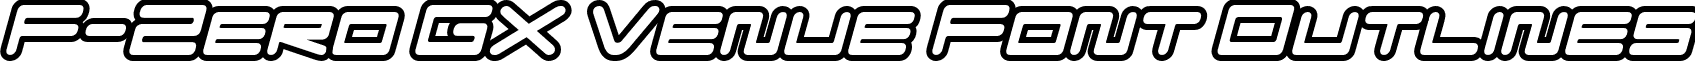 F-Zero GX Venue Font Outlines font - FZGXVenueFontOutlines-Oblique.otf